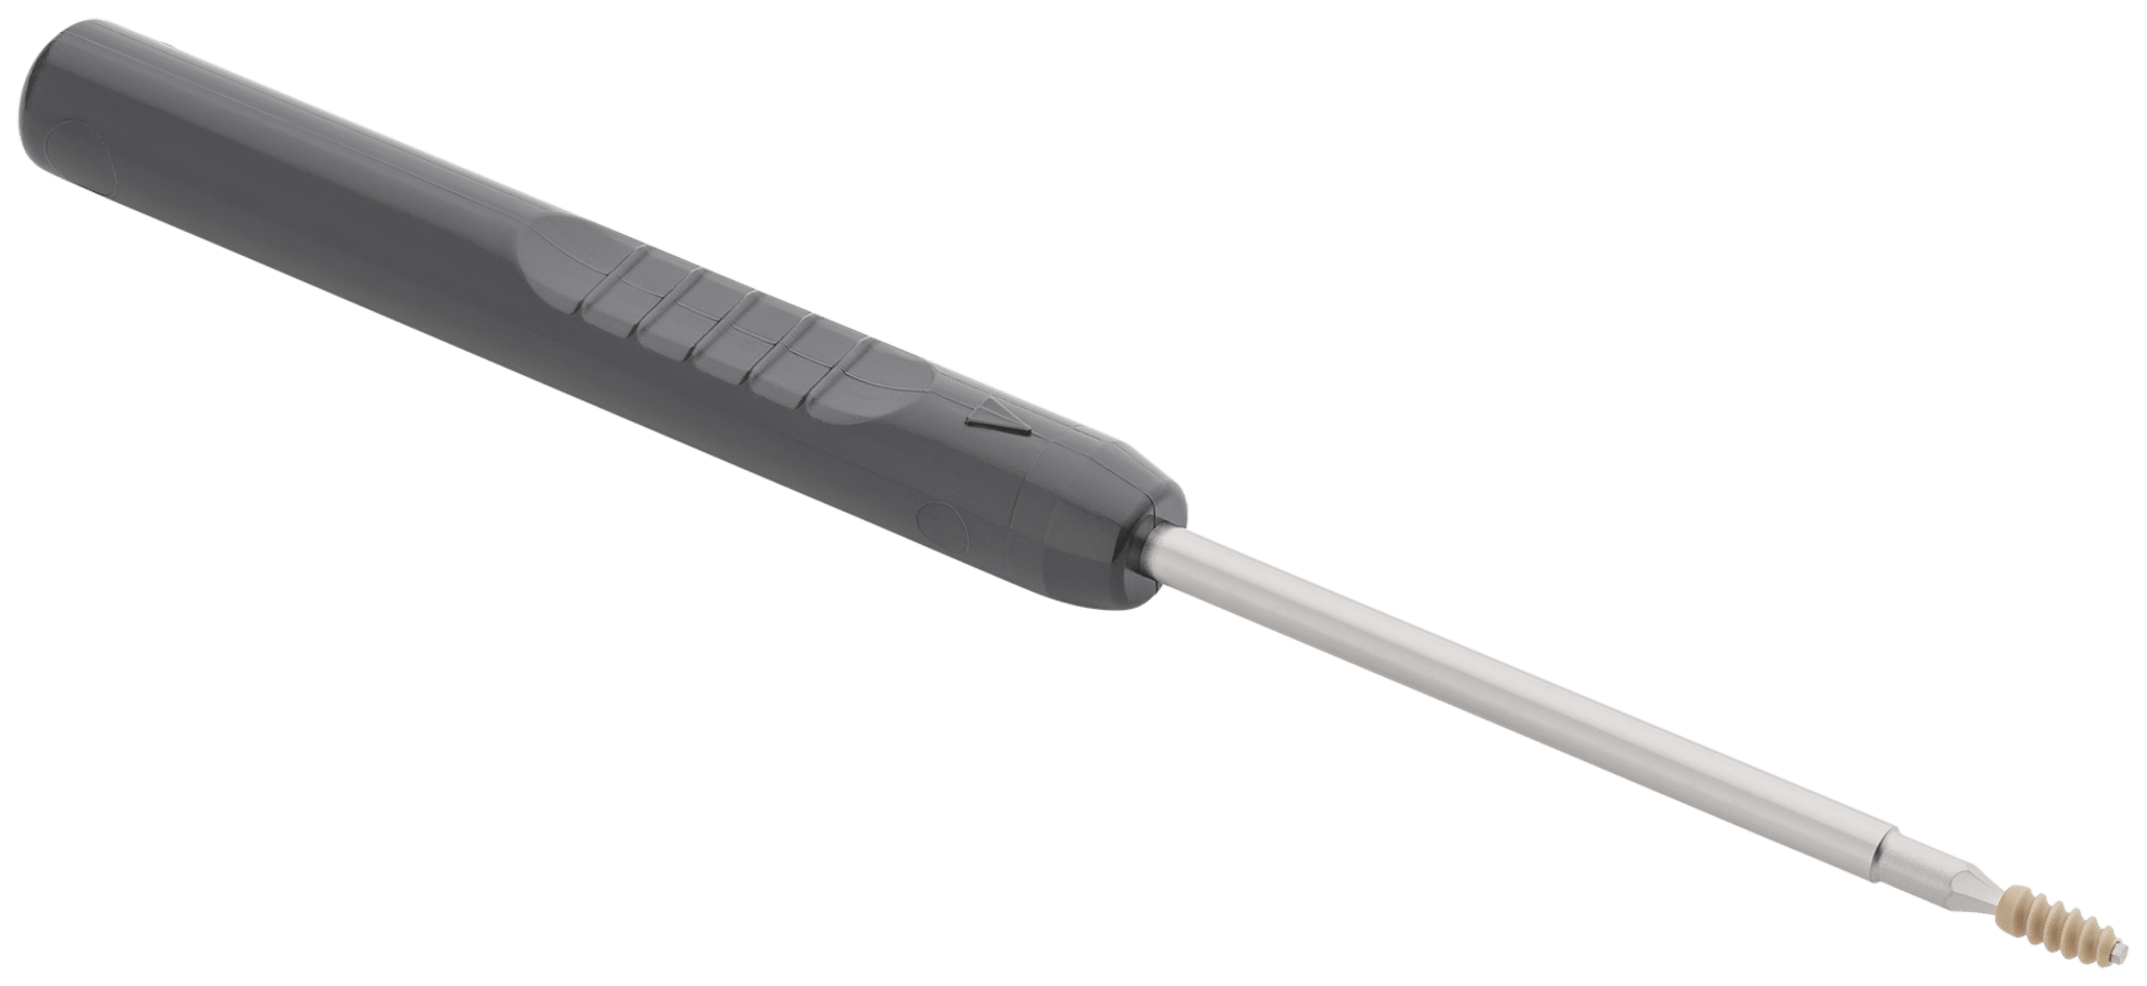 PEEK-Tenodesenschraube, 2.5 mm x 6 mm, mit Eindreher, steril, VE5